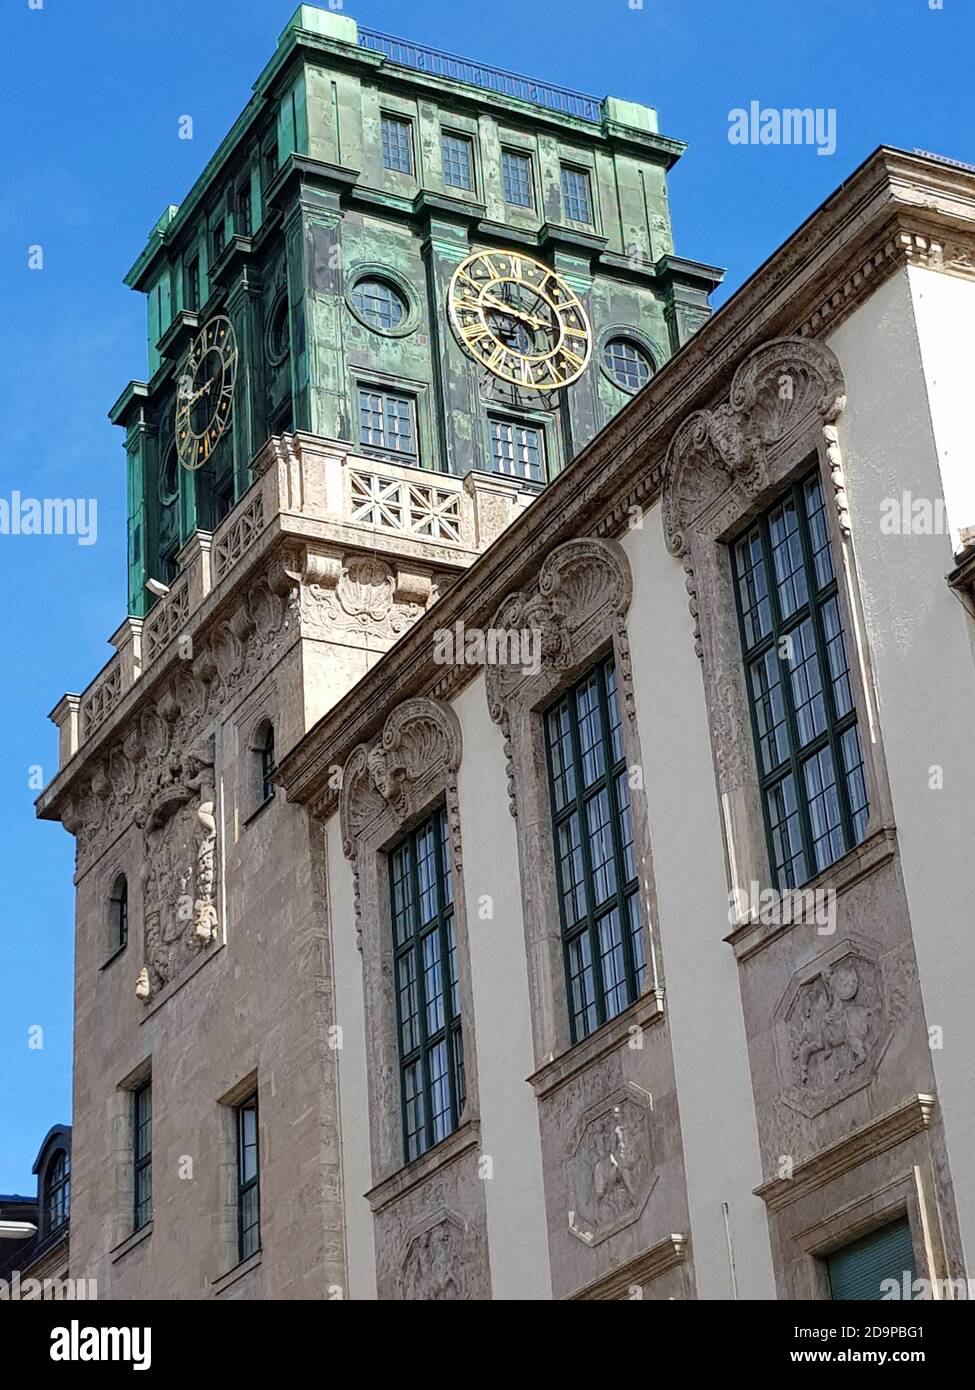 TUM, Université technique de Munich, deuxième plus grande université technique d'Allemagne. Tour de l'horloge, fondateur Ludwig II Banque D'Images